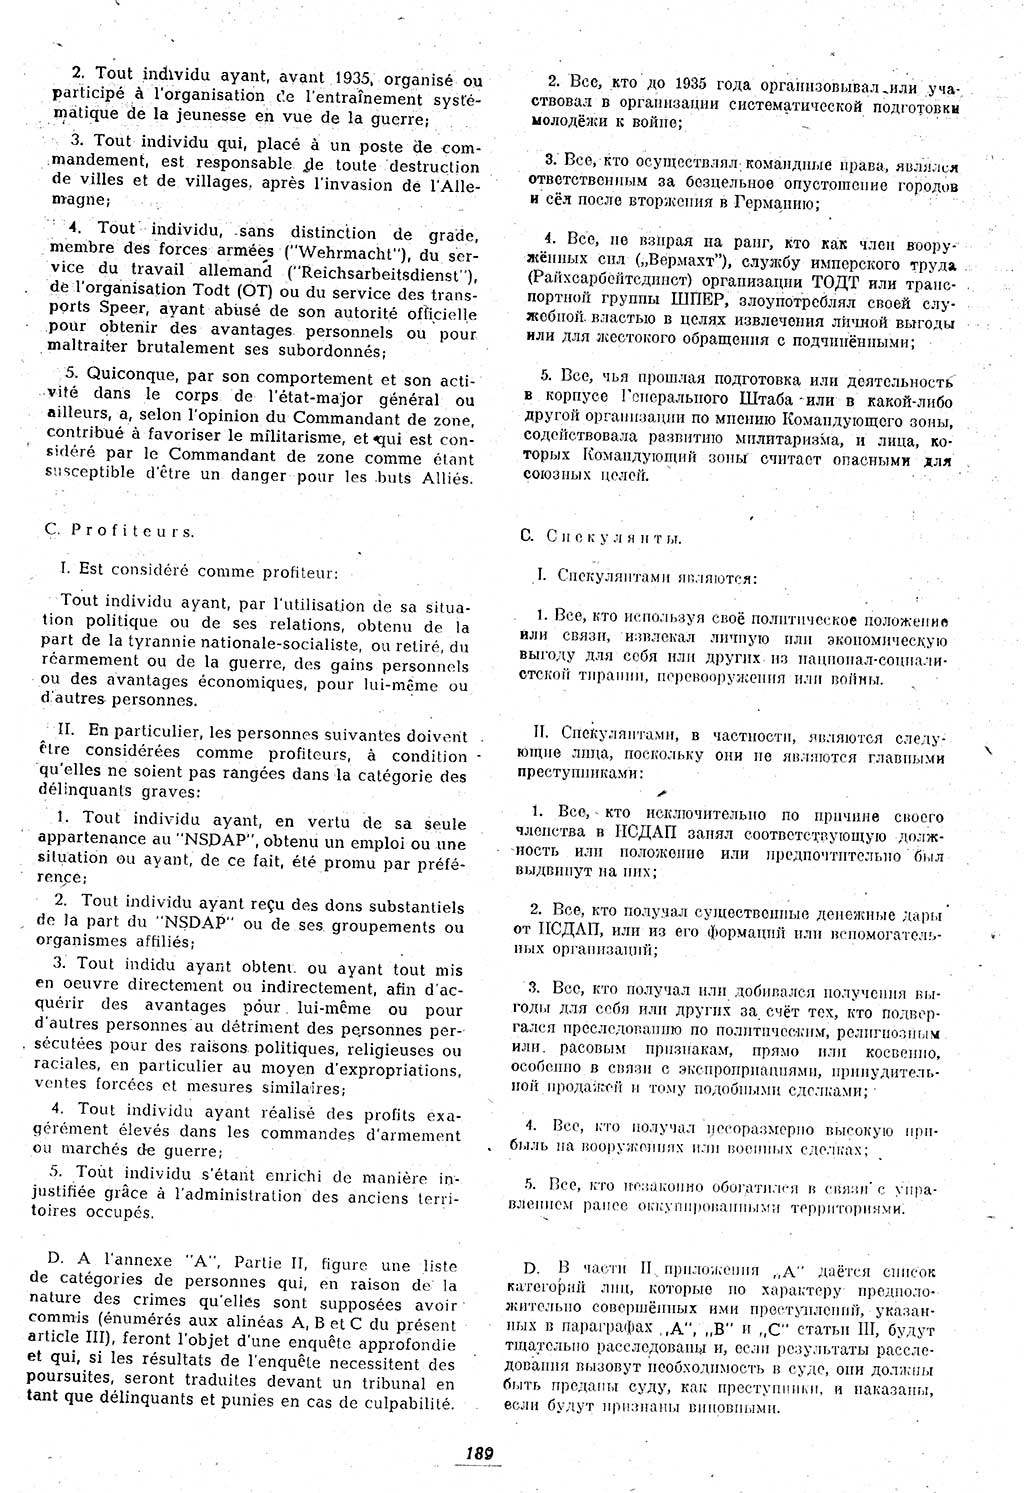 Amtsblatt des Kontrollrats (ABlKR) in Deutschland 1946, Seite 189/1 (ABlKR Dtl. 1946, S. 189/1)